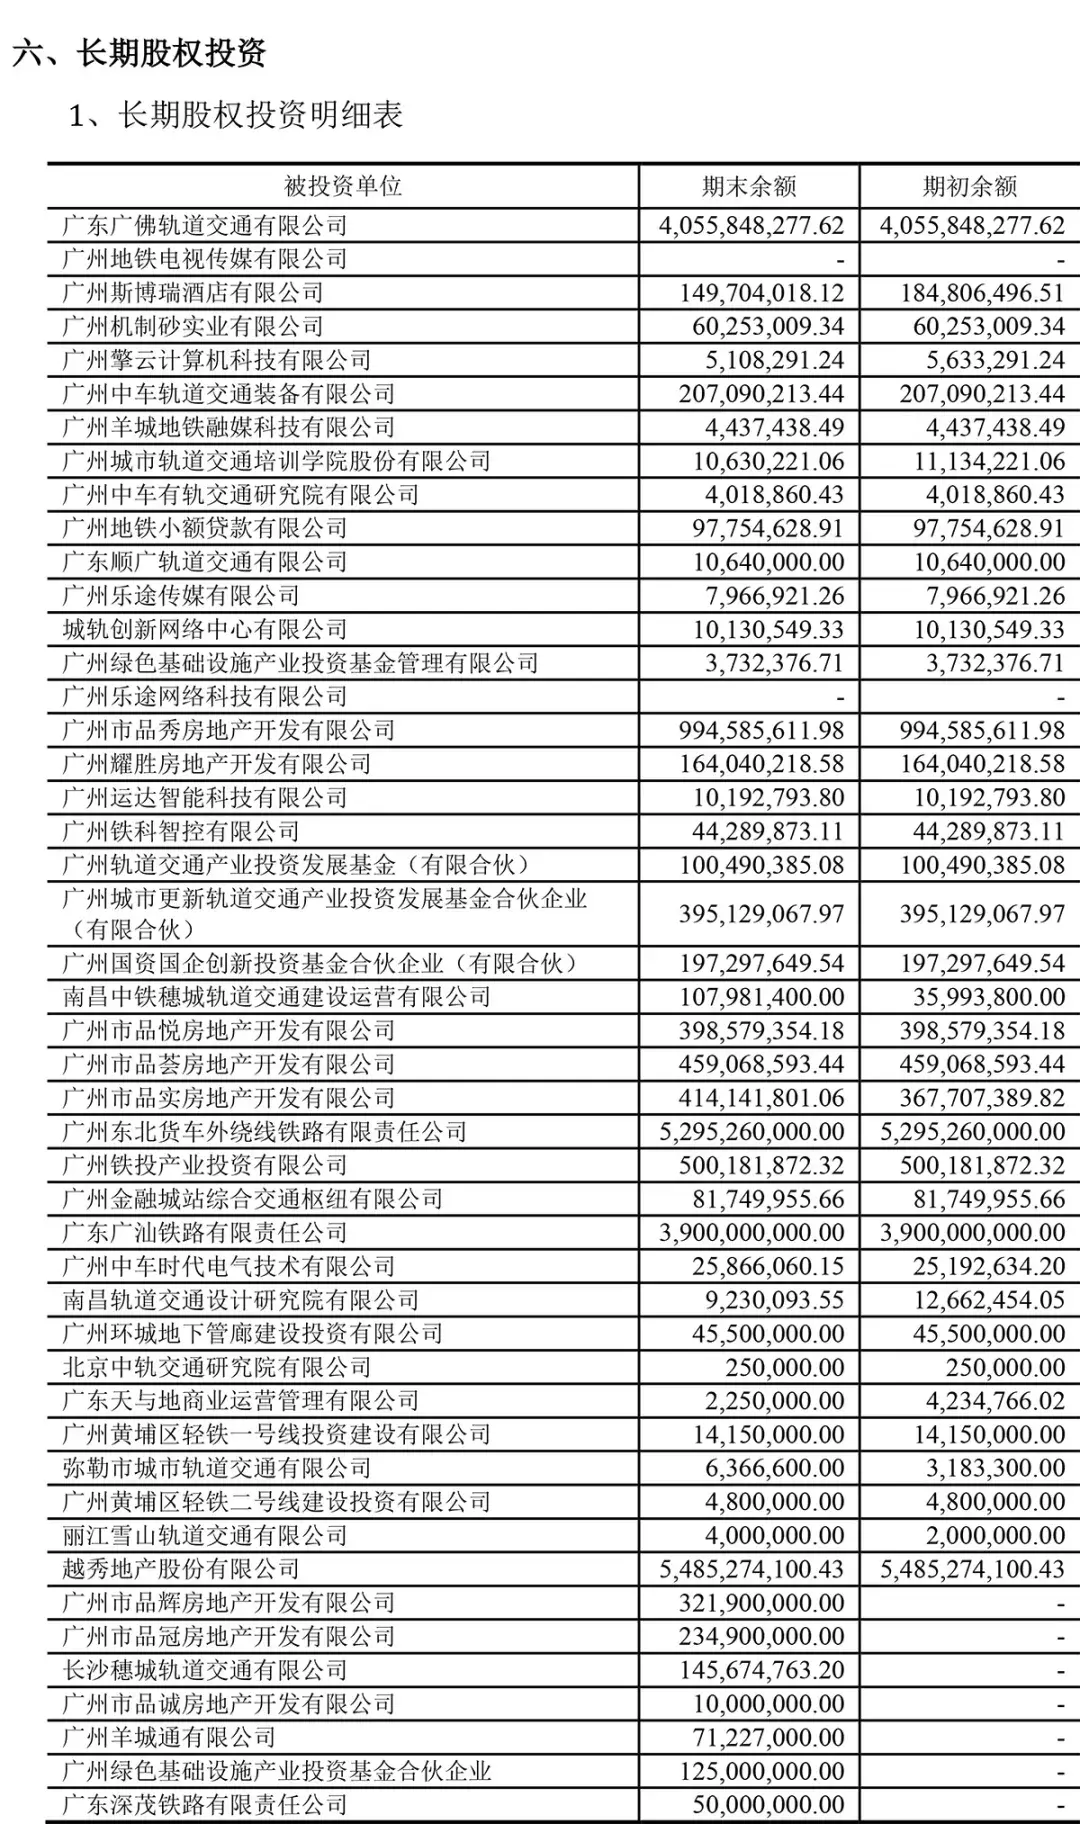 (广州地铁集团有限公司)广州地铁集团有限公司2020年半年度财务报表  第12张